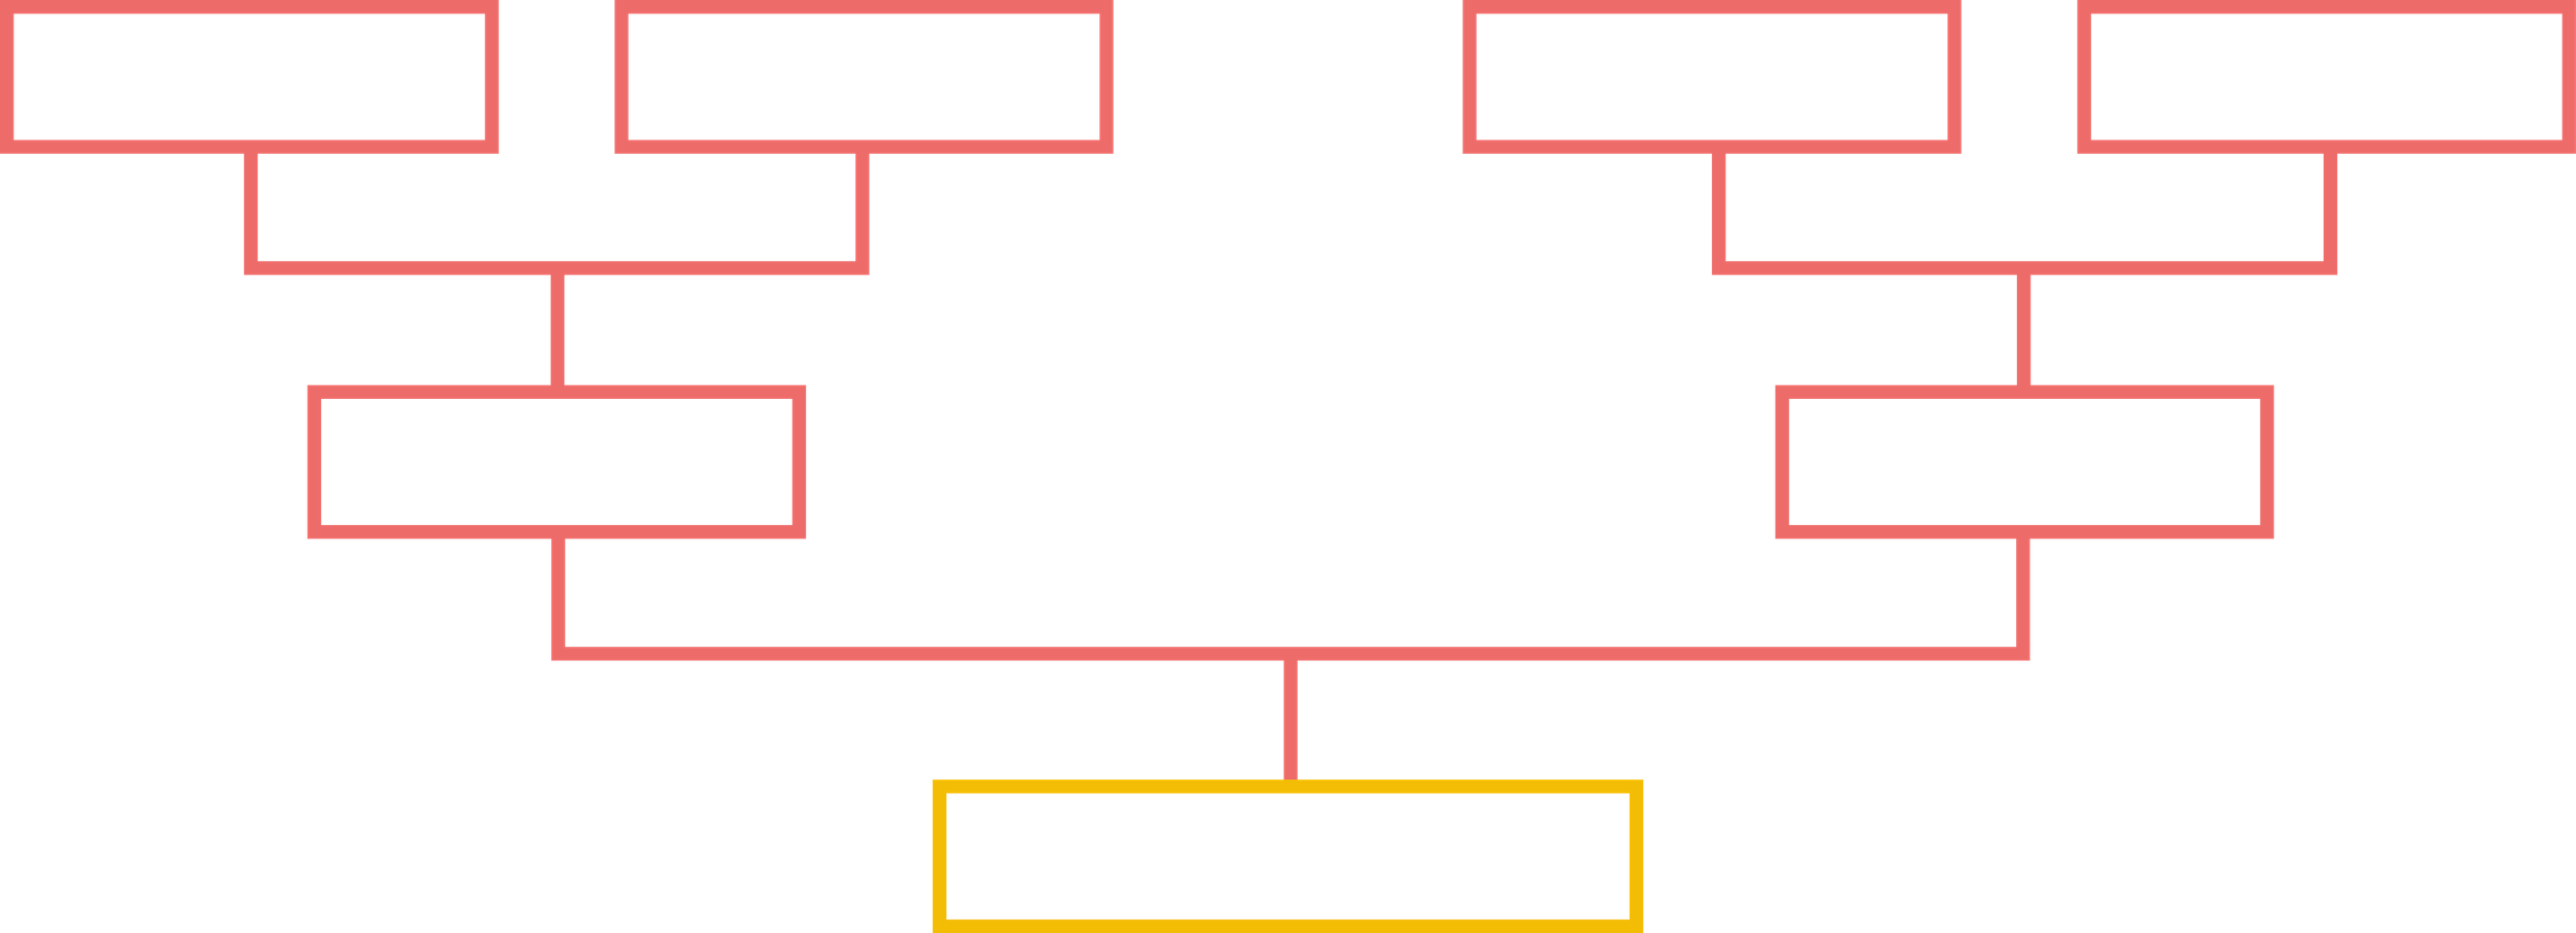 Ein Turnier-Plan mit leeren Kästchen